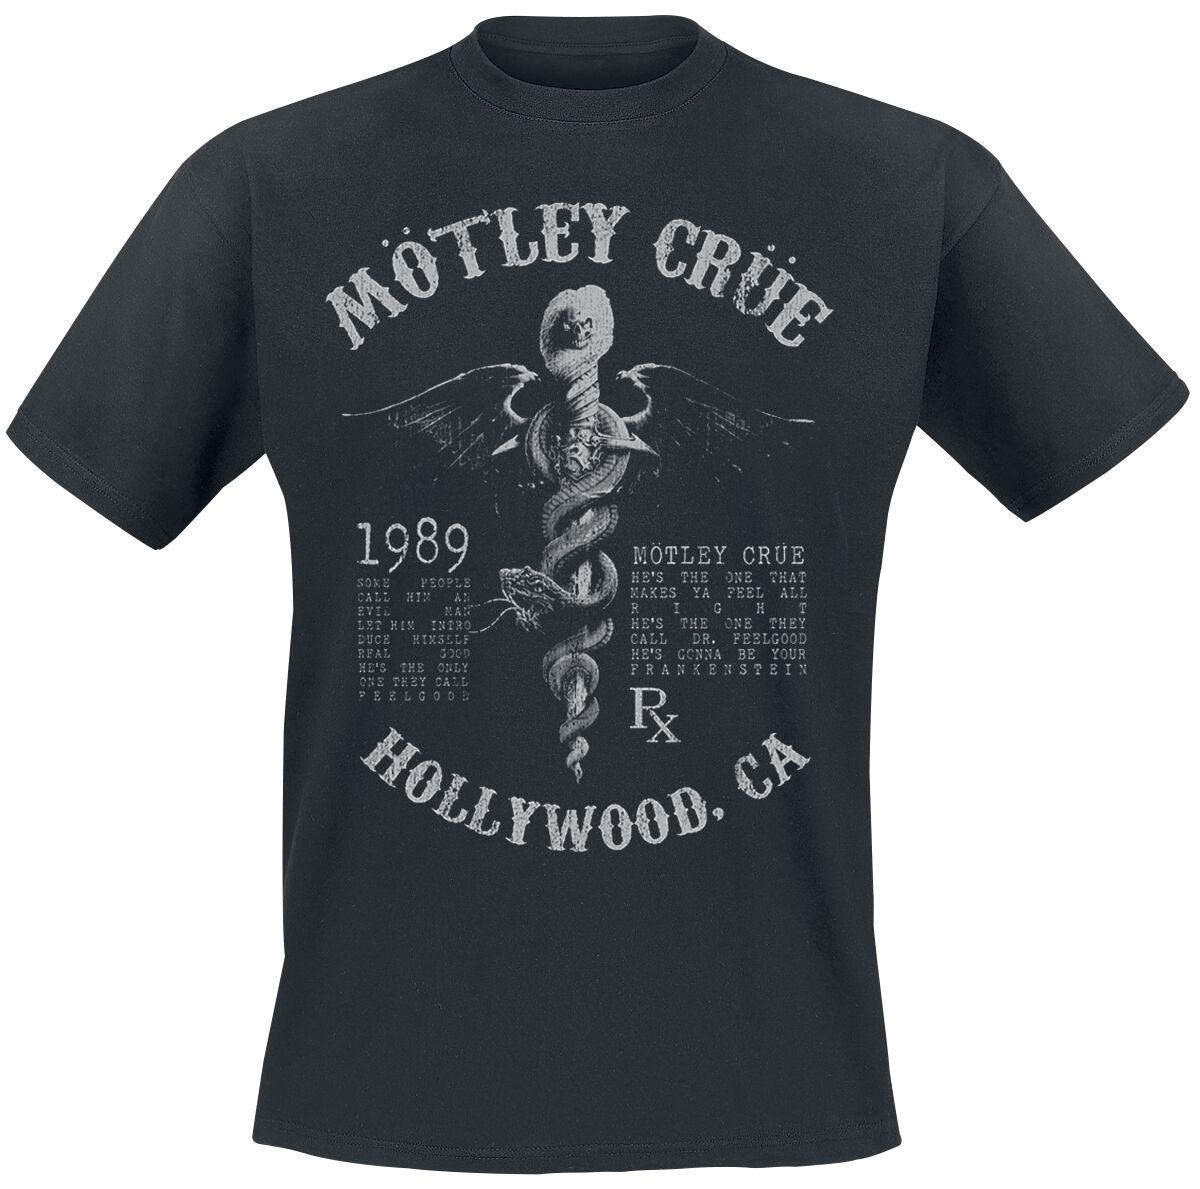 Mötley Crüe T-Shirt - Faded Feel Good Lyrics - S bis XXL - für Männer - Größe S - schwarz  - Lizenziertes Merchandise!